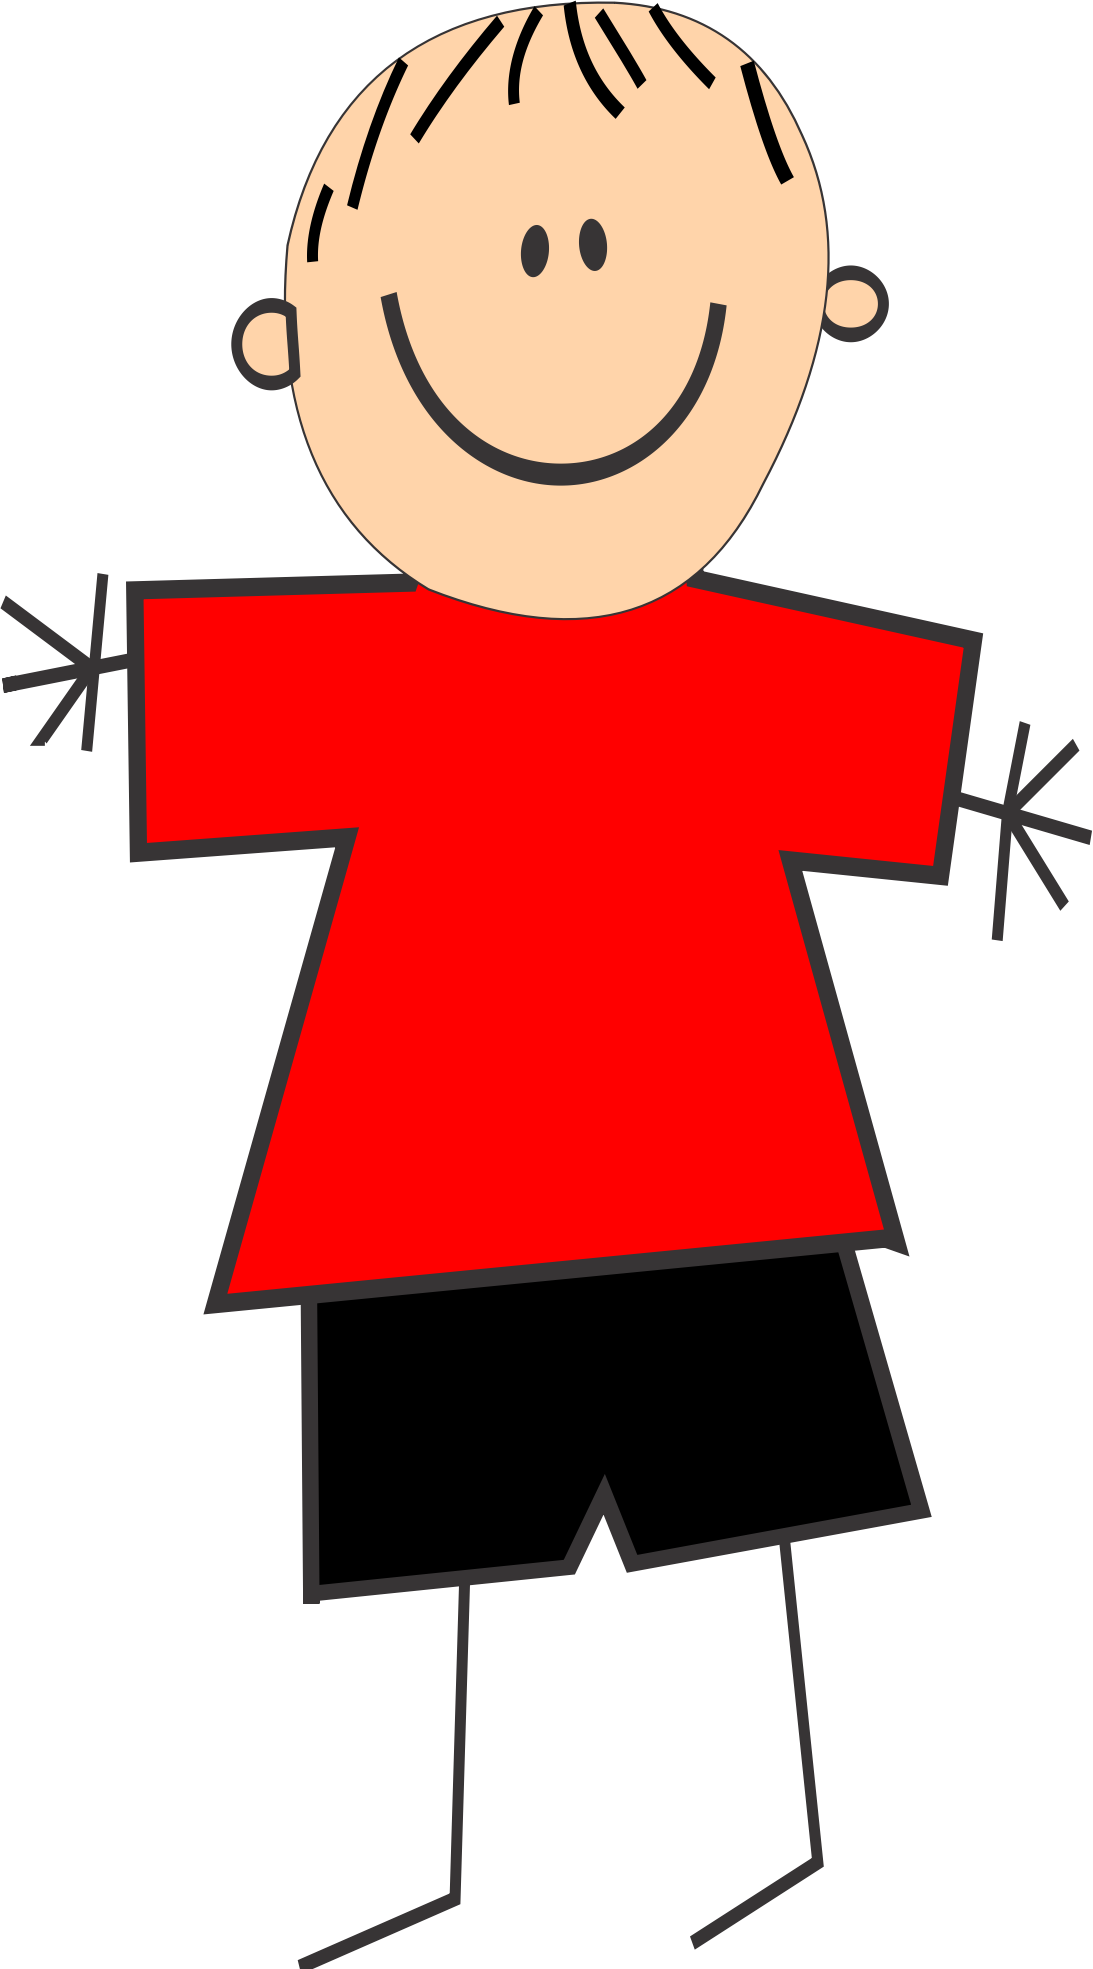 Boy With Red Shirt | art-kk.com